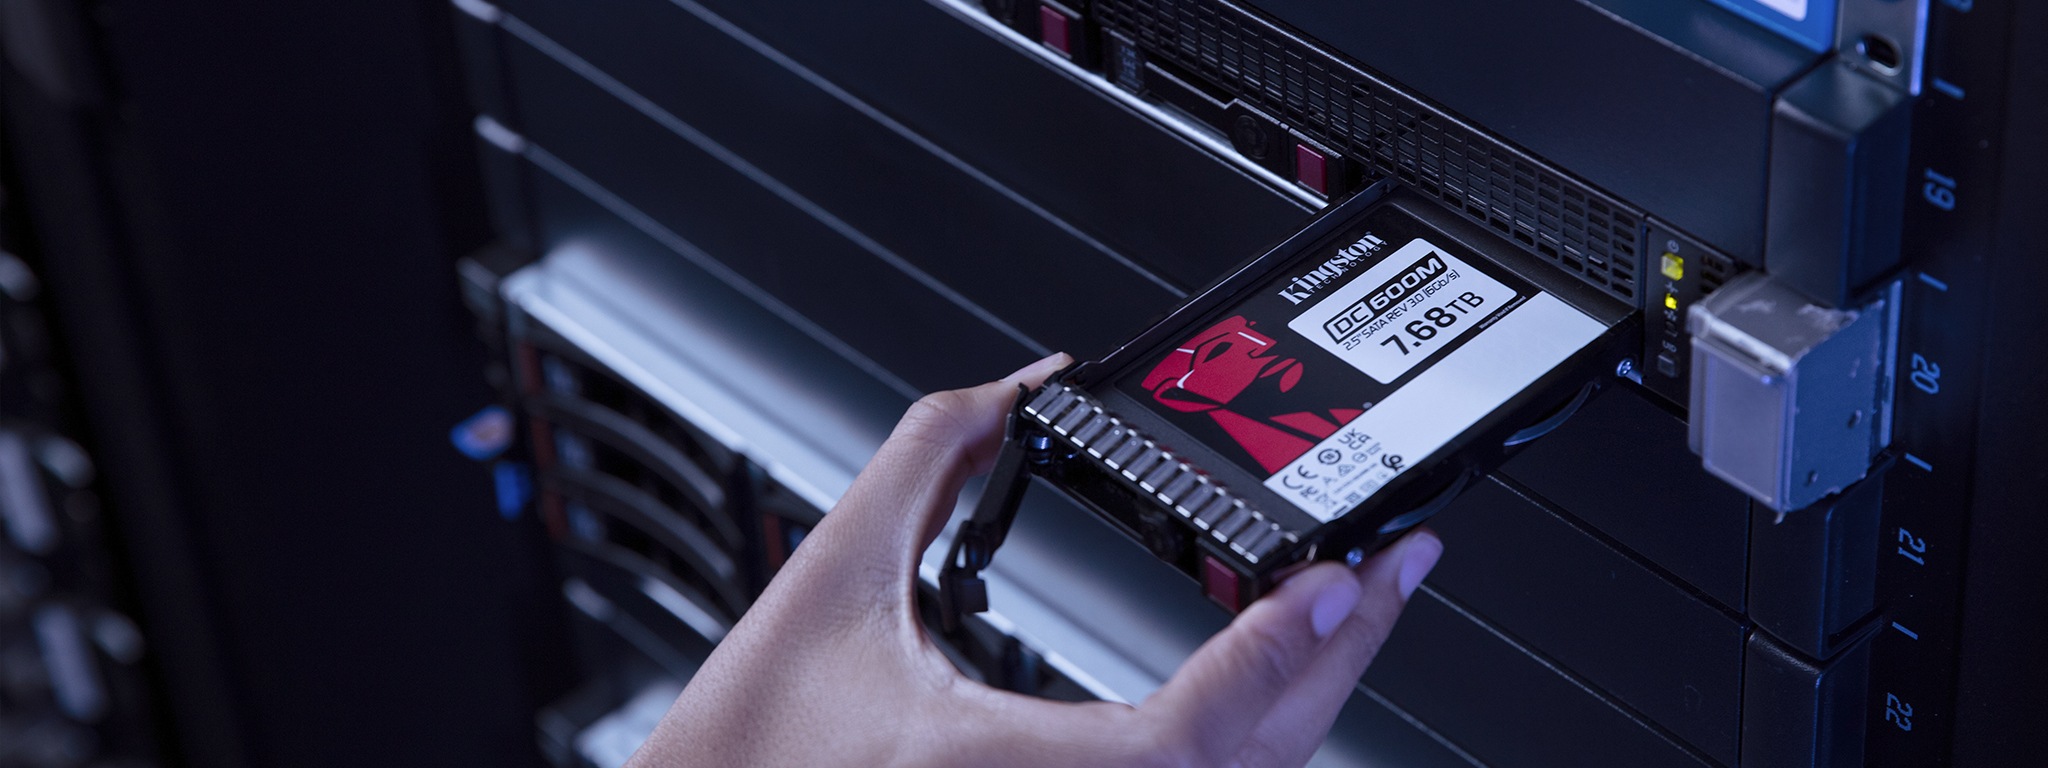 一隻手將 Kingston DC600M SSD 固態硬碟安裝到伺服器機架中